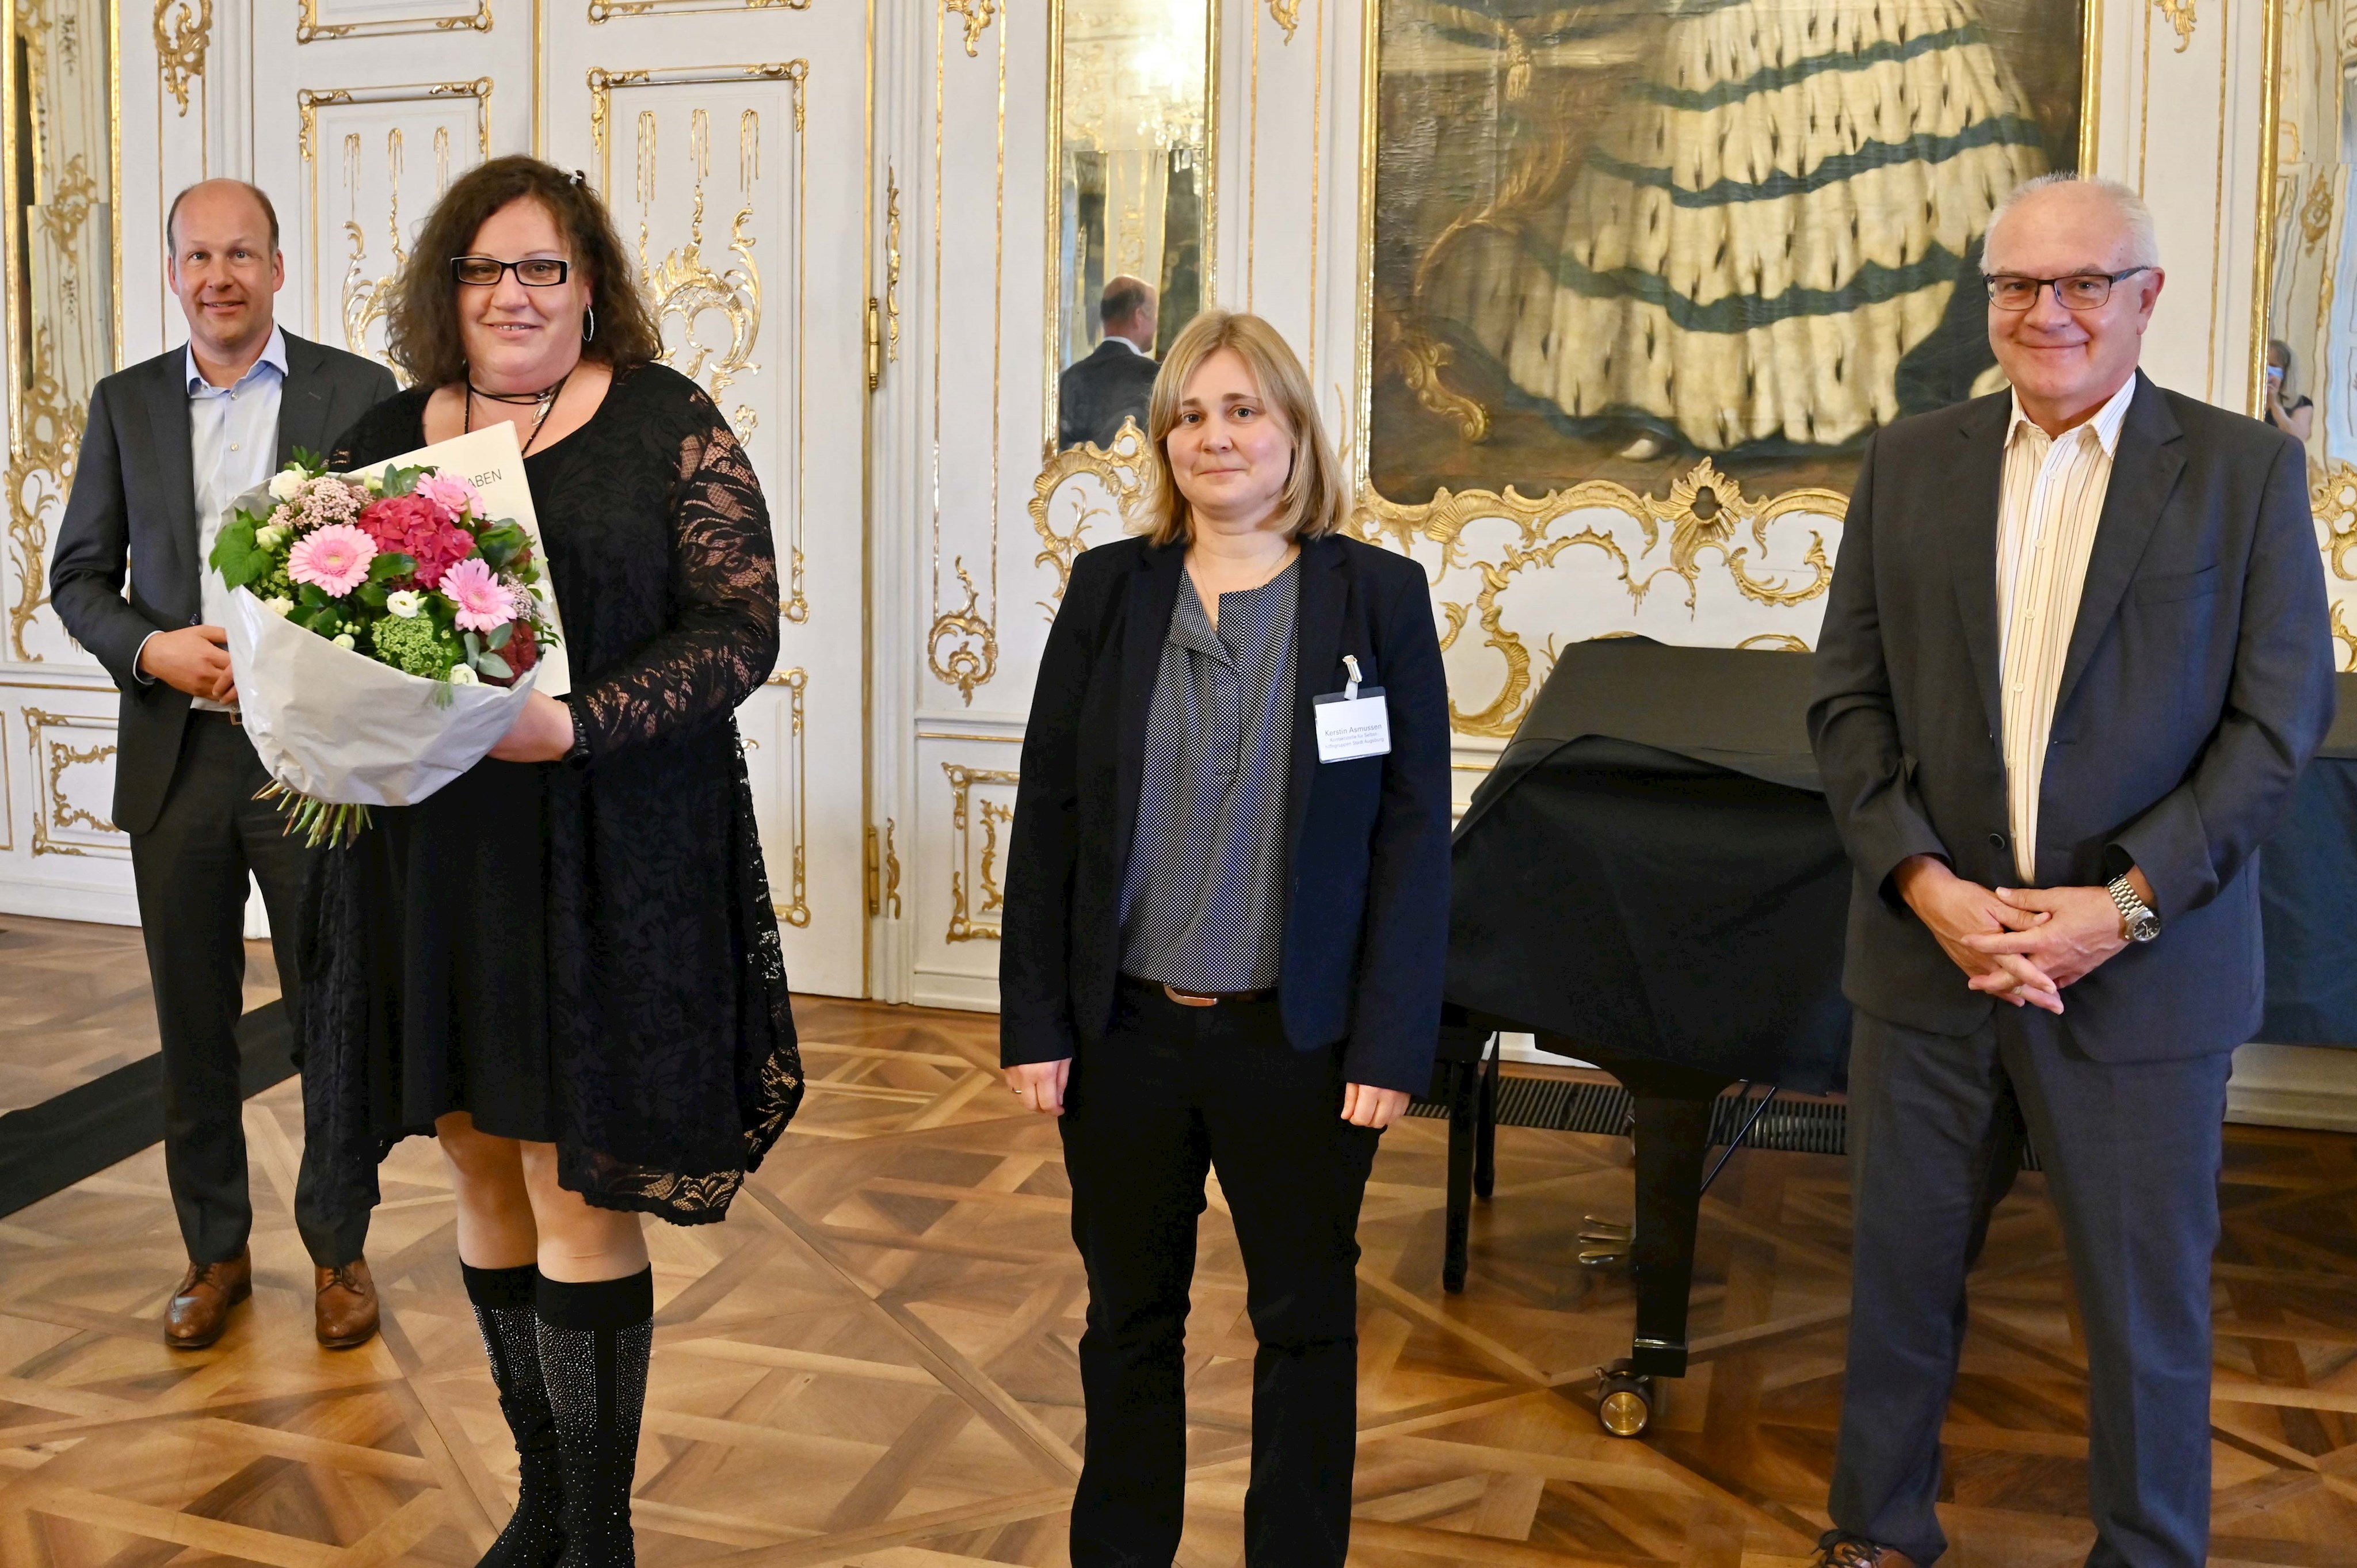 Eine Auszeichnung, vielfältige Facetten: Bezirk Schwaben würdigt herausragendes Engagement im Ehrenamt 